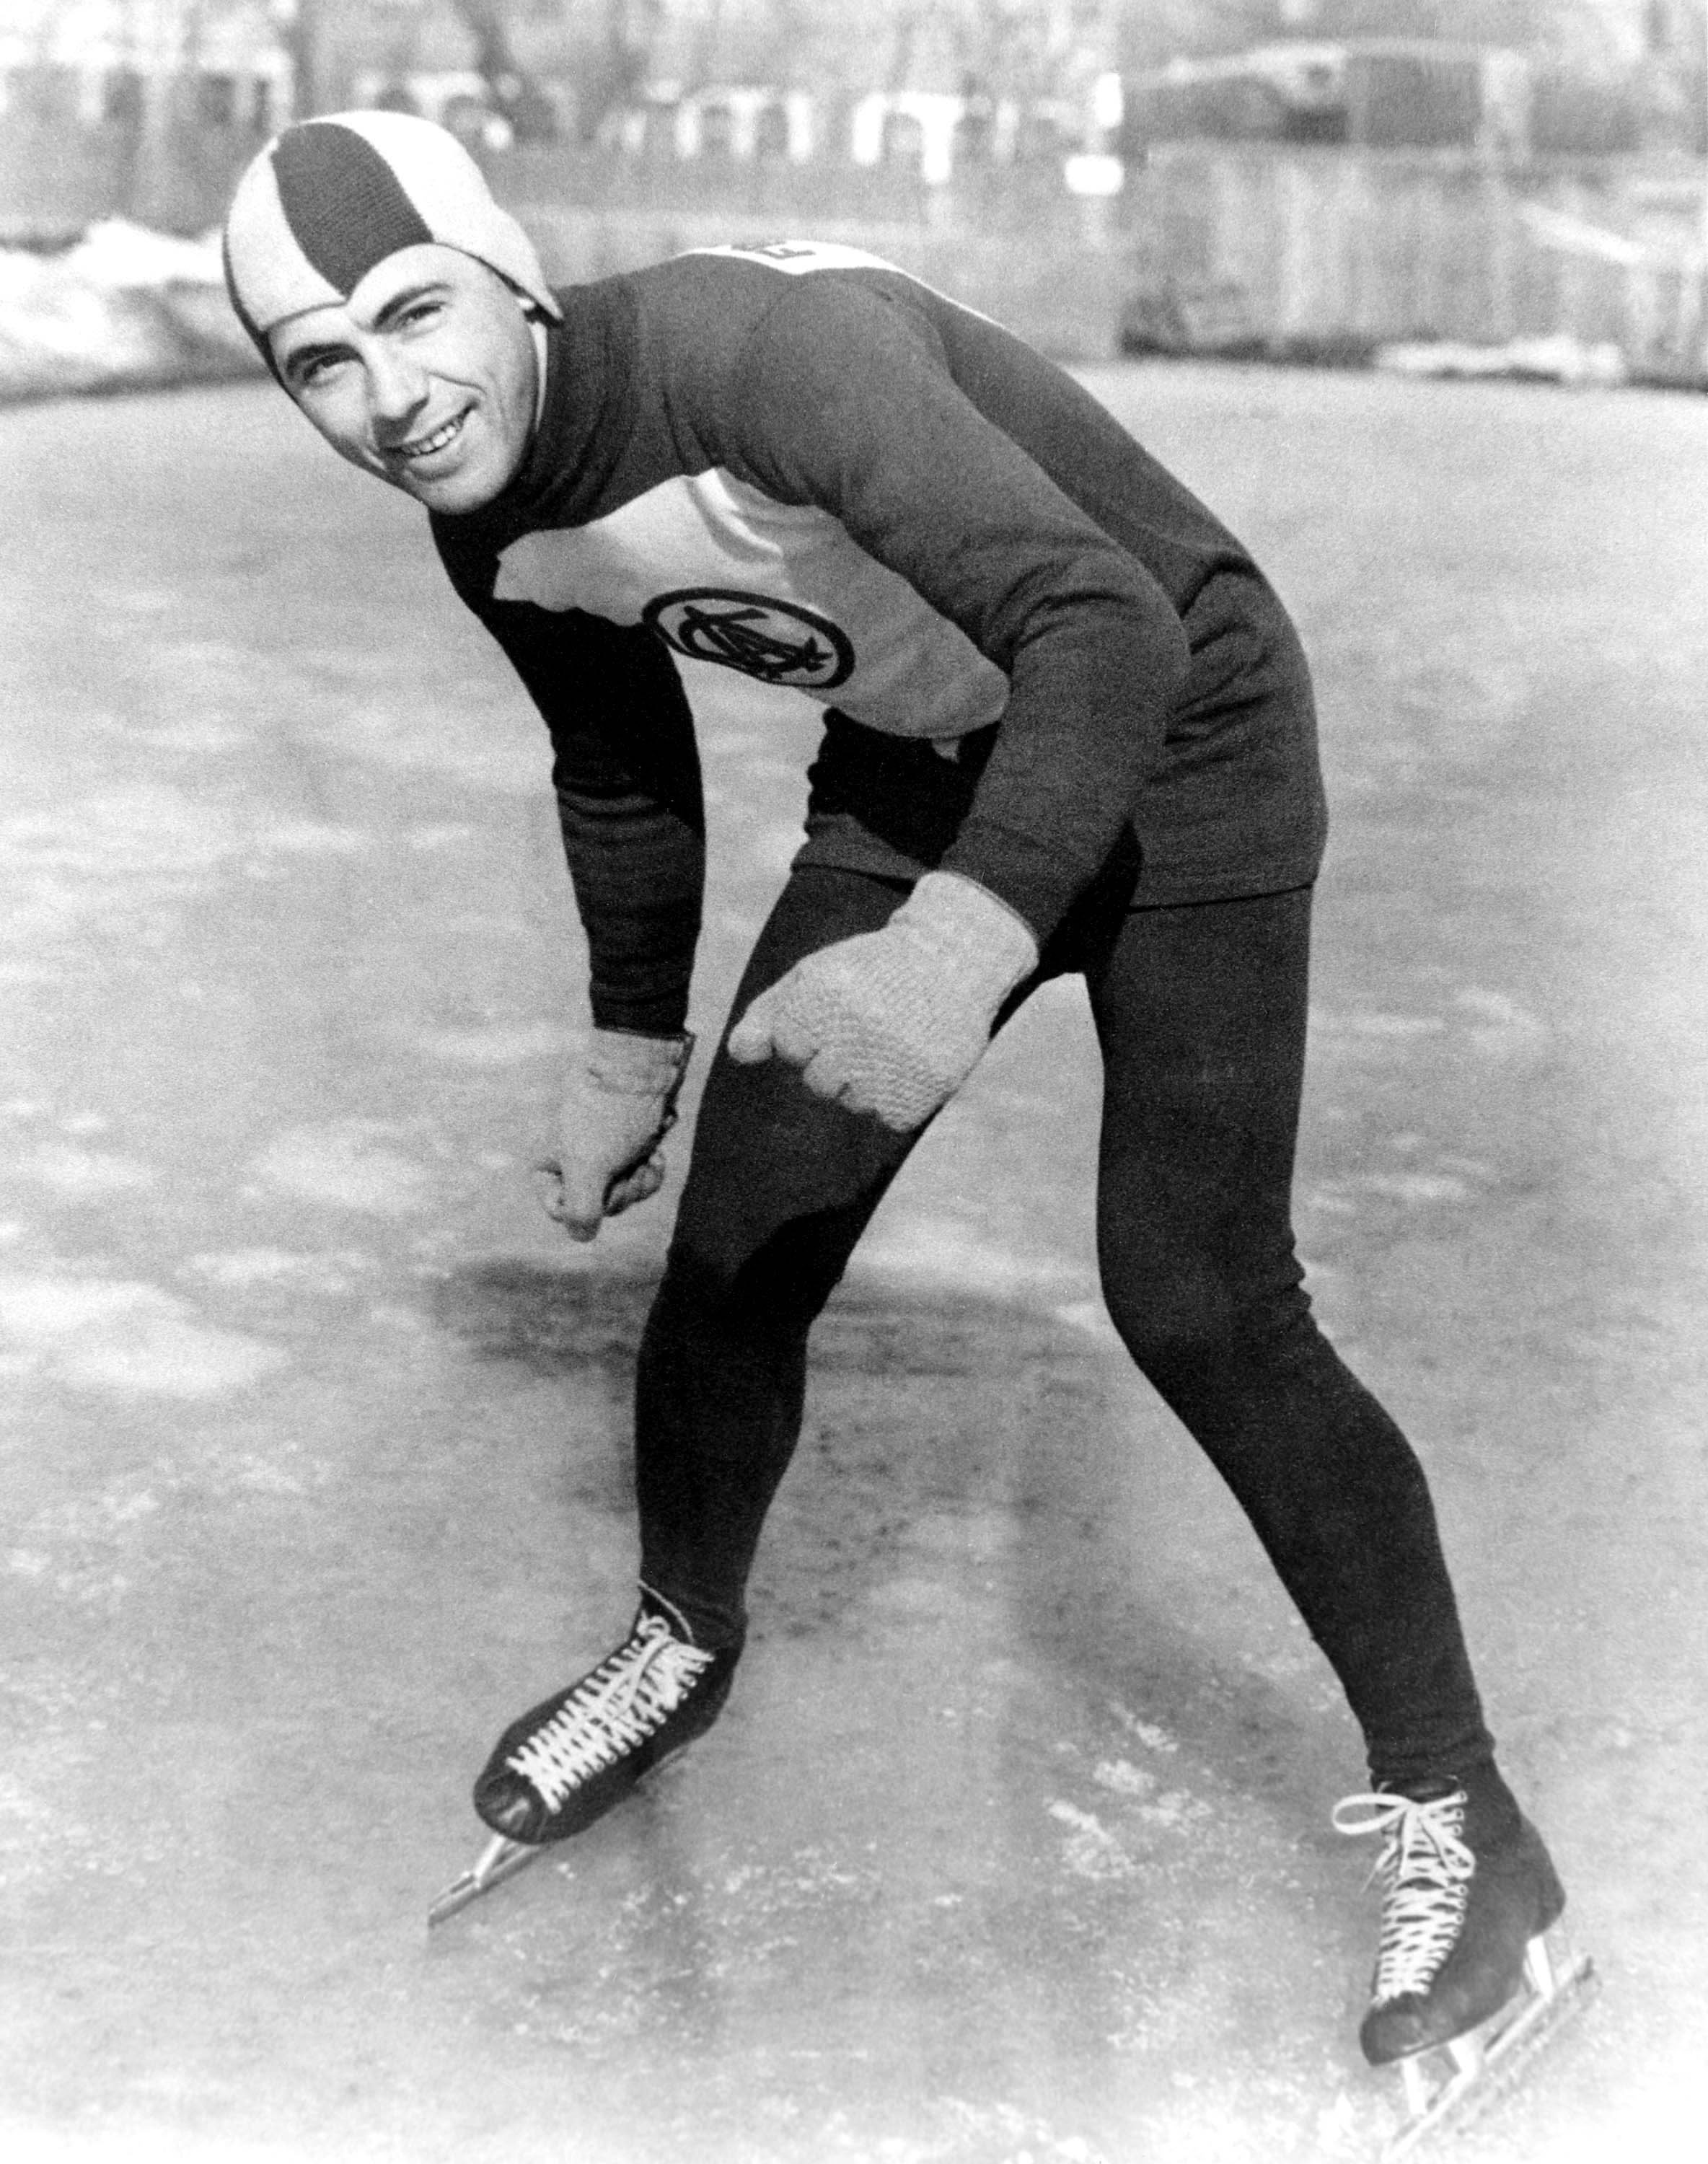 Le Canadien Frank Stack a pris part à l'épreuve de patinage de vitesse des Jeux olympiques de Lake Placid en 1932. Il a remporté le bronze au 10 000 m. (CP Photo/COC)